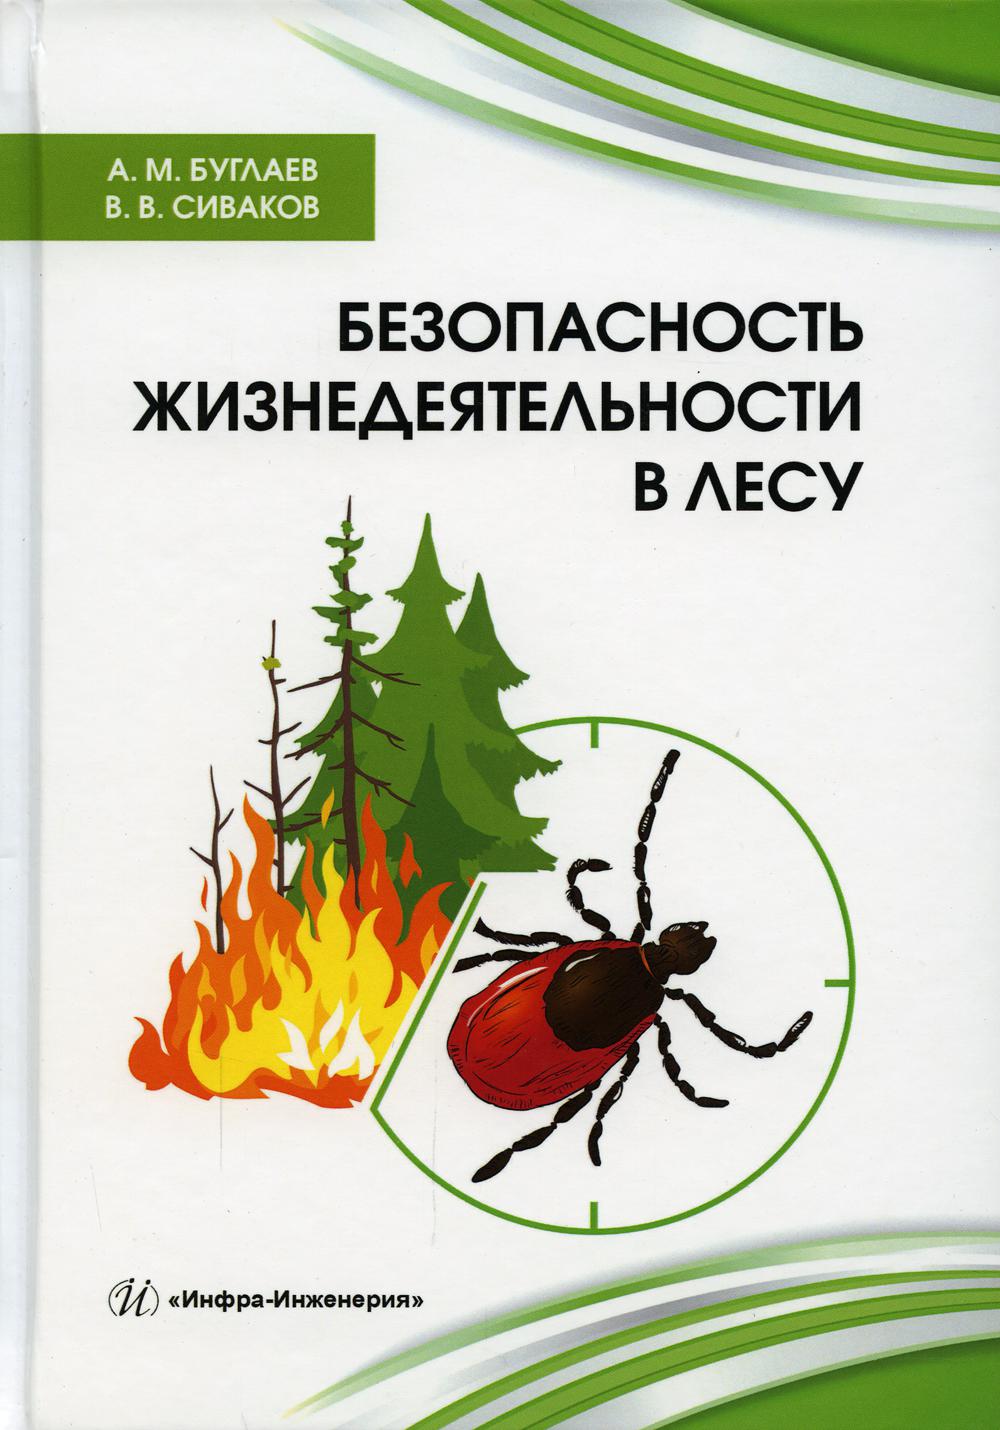 Безопасность жизнедеятельности в лесу: справочник